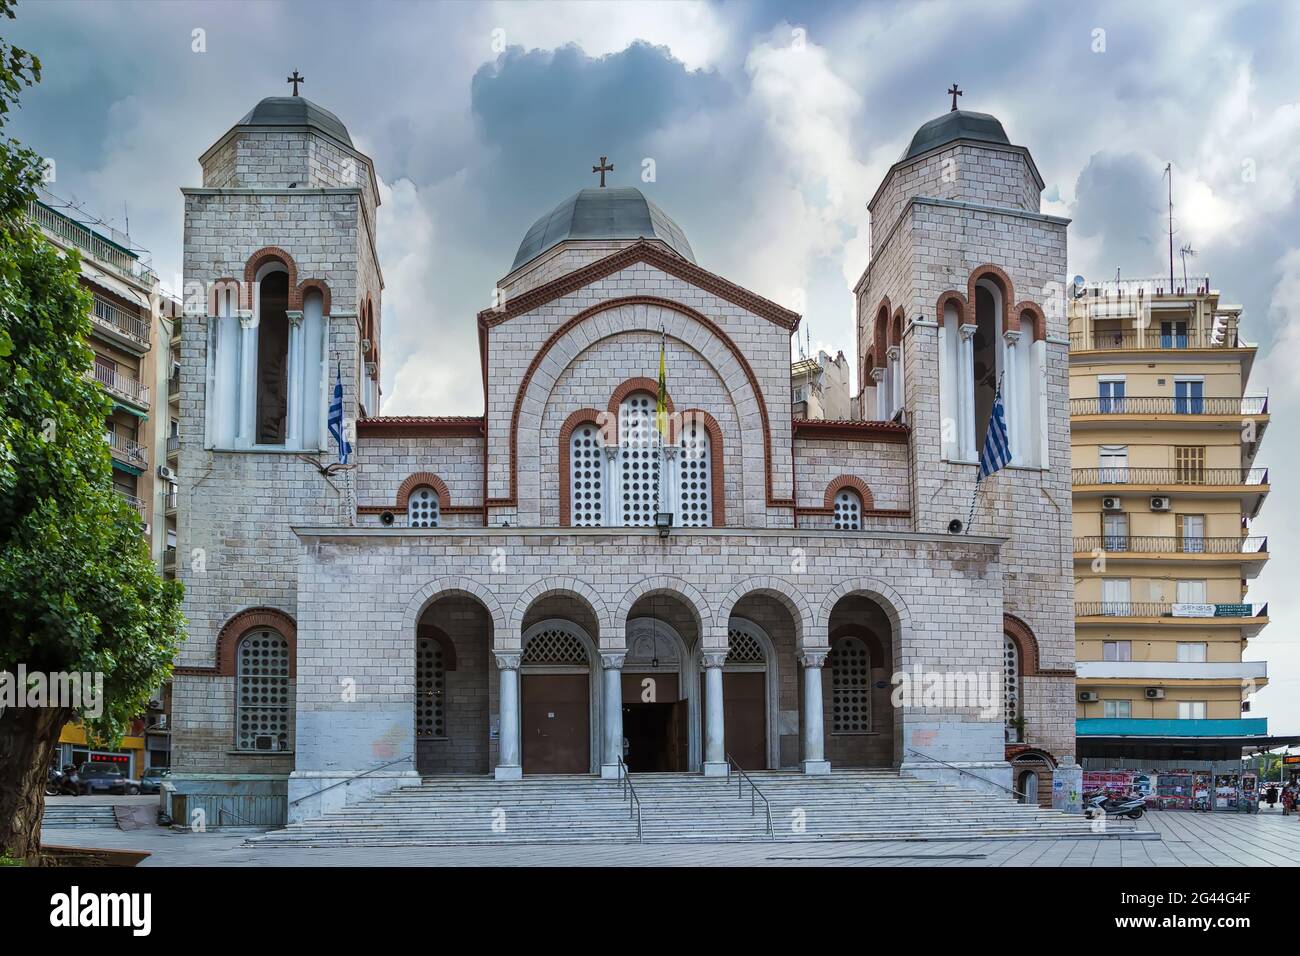 Holy Church of Panagia Dexia, Thessaloniki, Greece Stock Photo